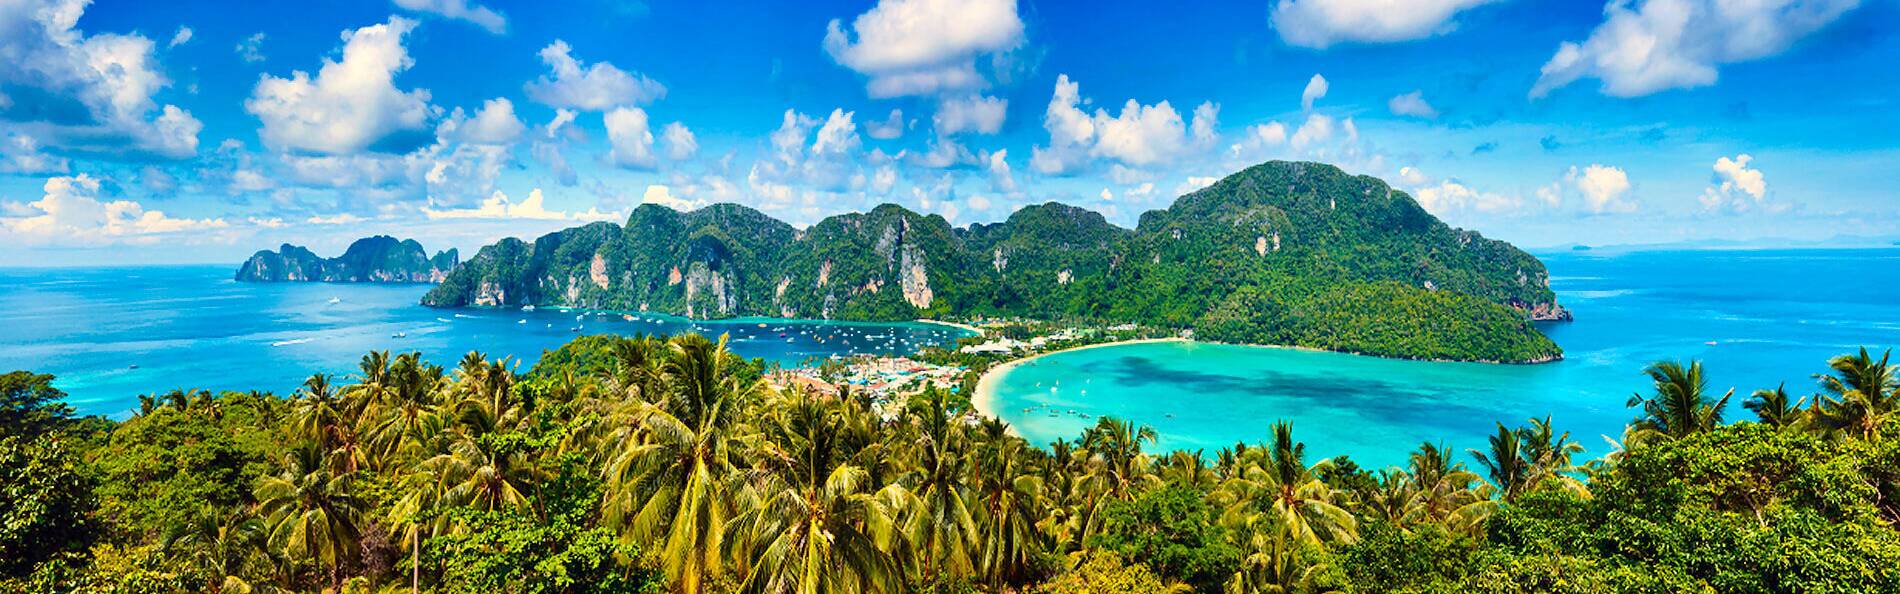 Thailand ist bekannt für seine tropischen Traumstrände und das beliebteste Urlaubsziel bei Fernreisen